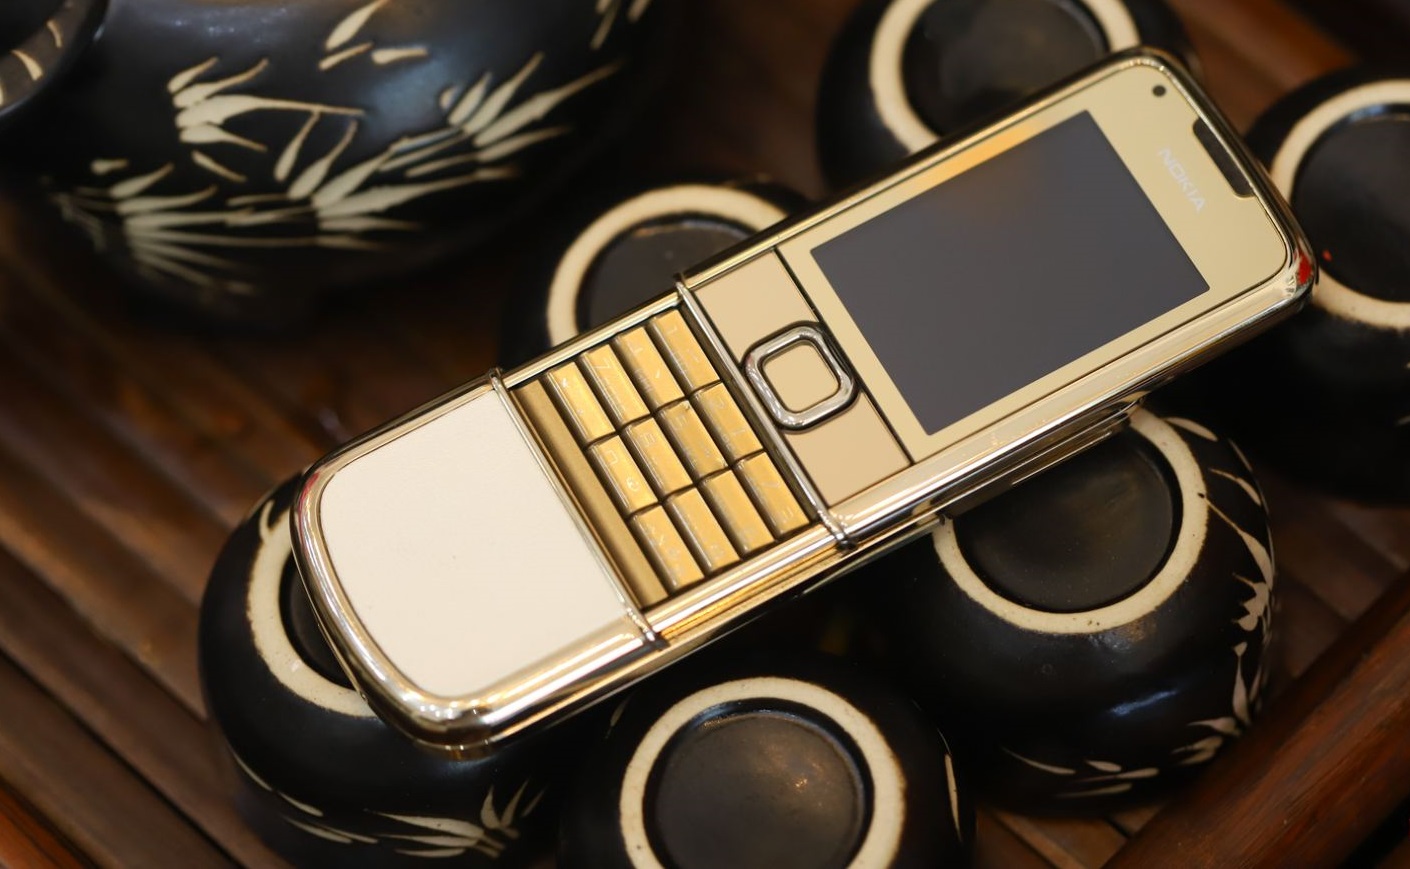 Sở hữu điện thoại Nokia 8800 Gold Arte là sở hữu một tác phẩm nghệ thuật chẳng thể cưỡng lại. Với màu vàng sáng lấp lánh và thiết kế độc đáo, sản phẩm này không chỉ là một chiếc điện thoại mà còn là một biểu tượng thể hiện đẳng cấp và phong cách.